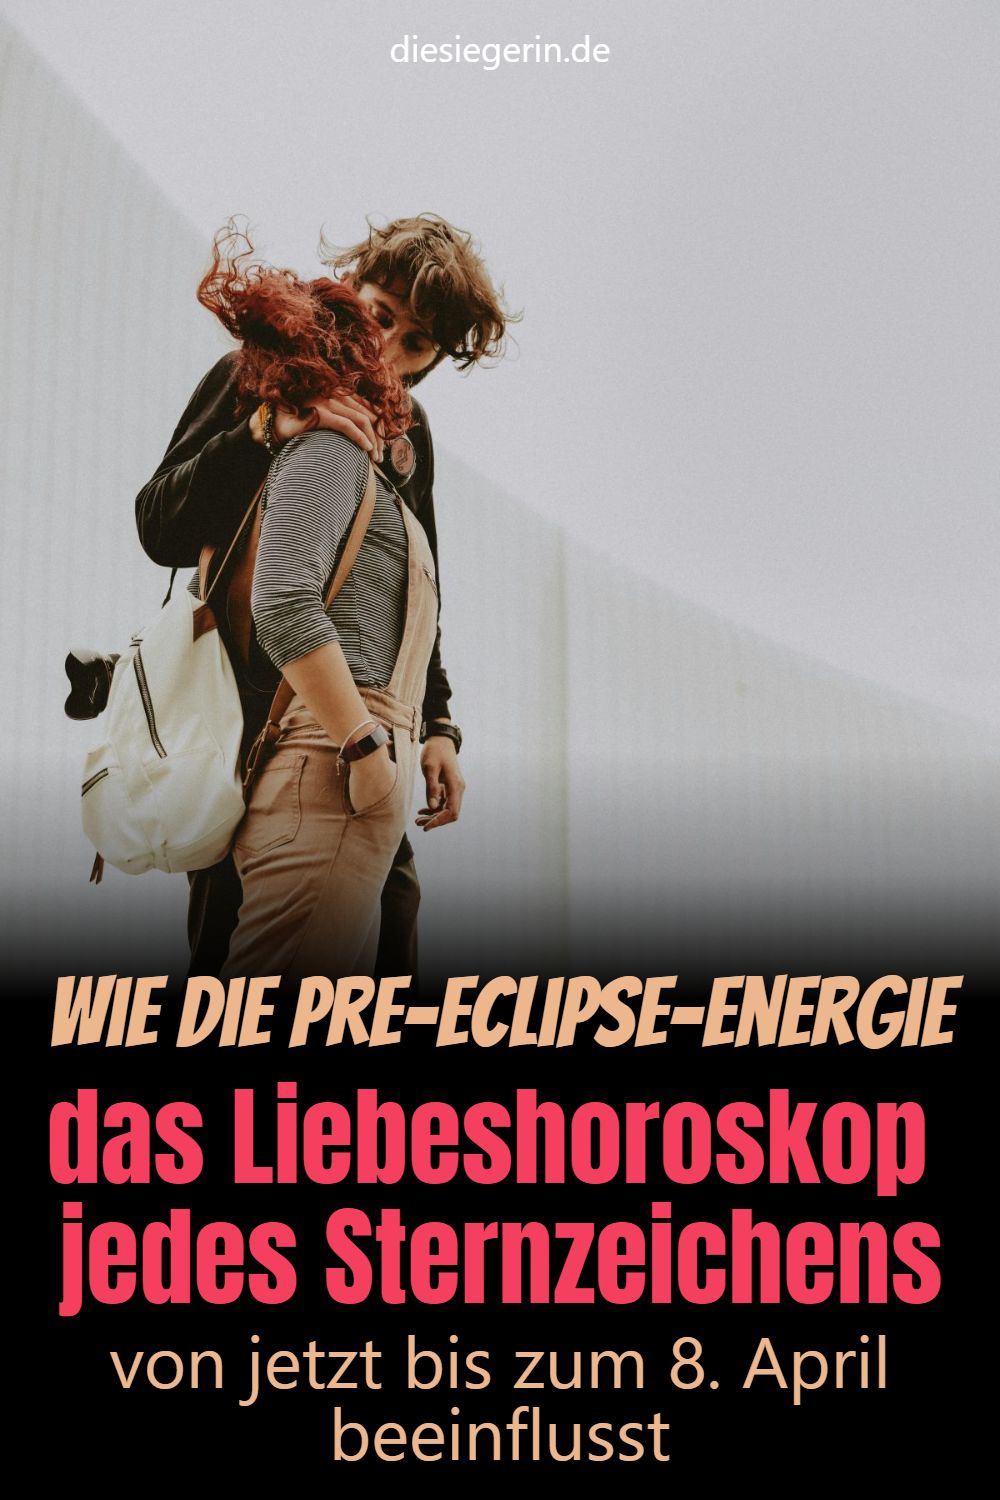 Wie die Pre-Eclipse-Energie das Liebeshoroskop jedes Sternzeichens von jetzt bis zum 8. April beeinflusst